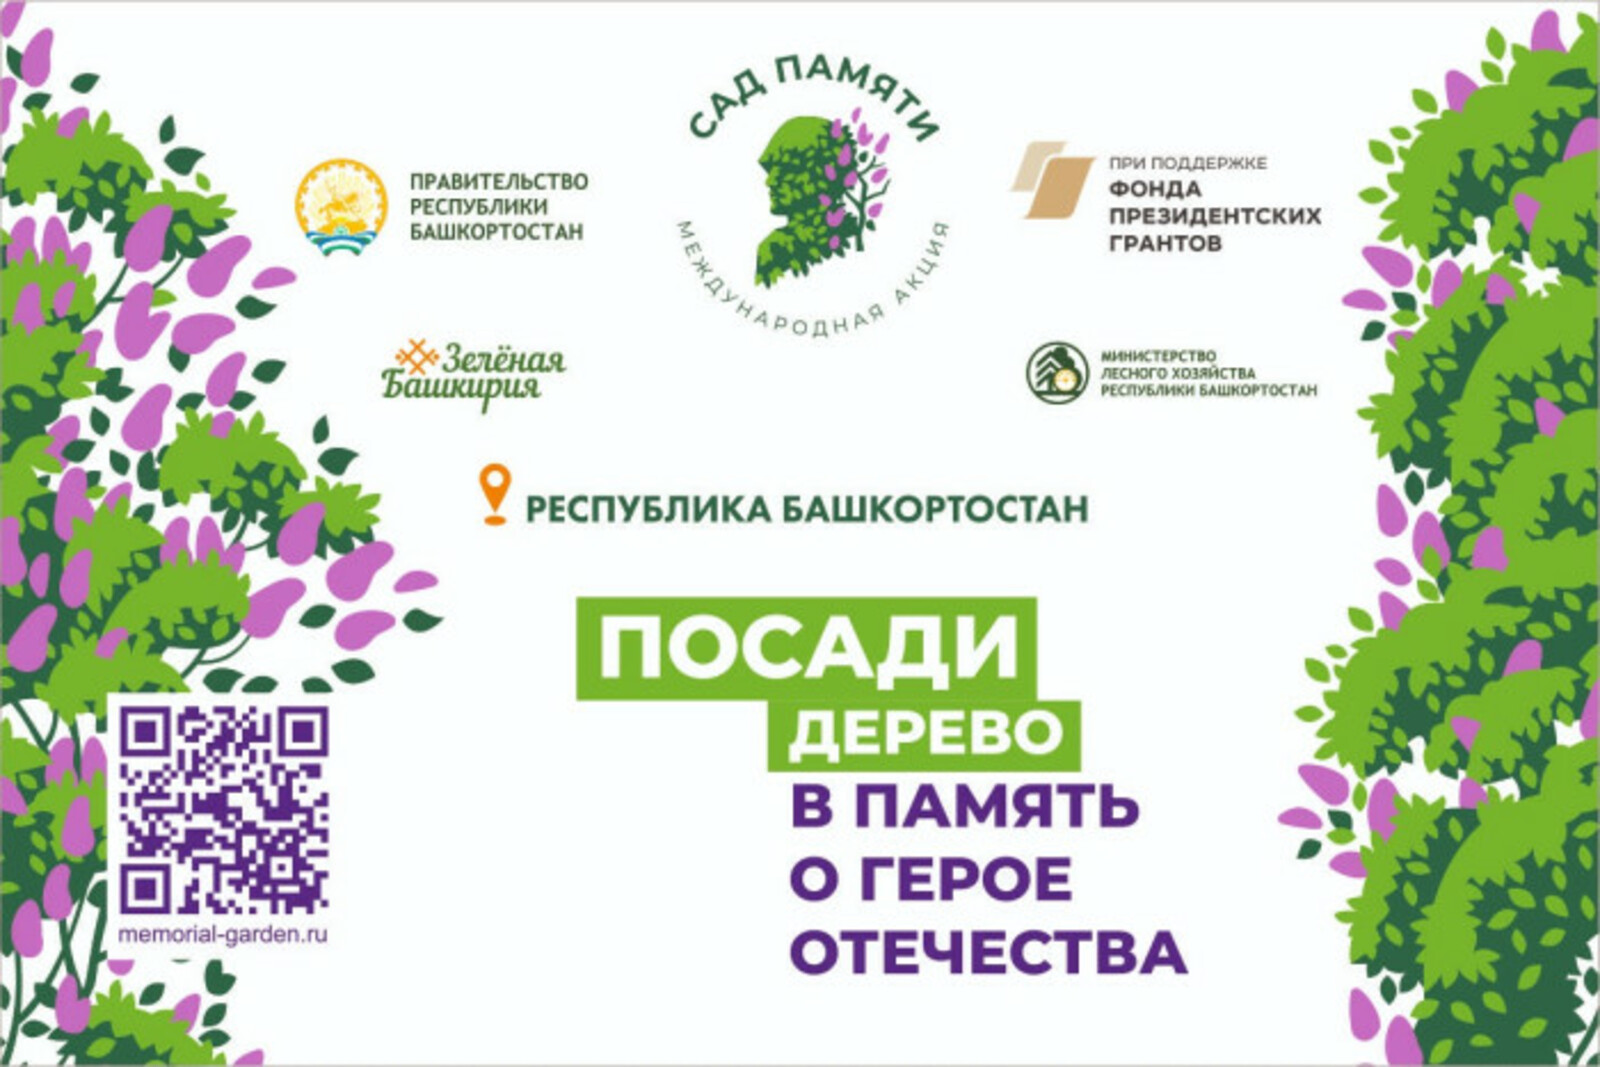 В рамках международной акции "Сад памяти" в Башкирии высадят 700 тысяч деревьев